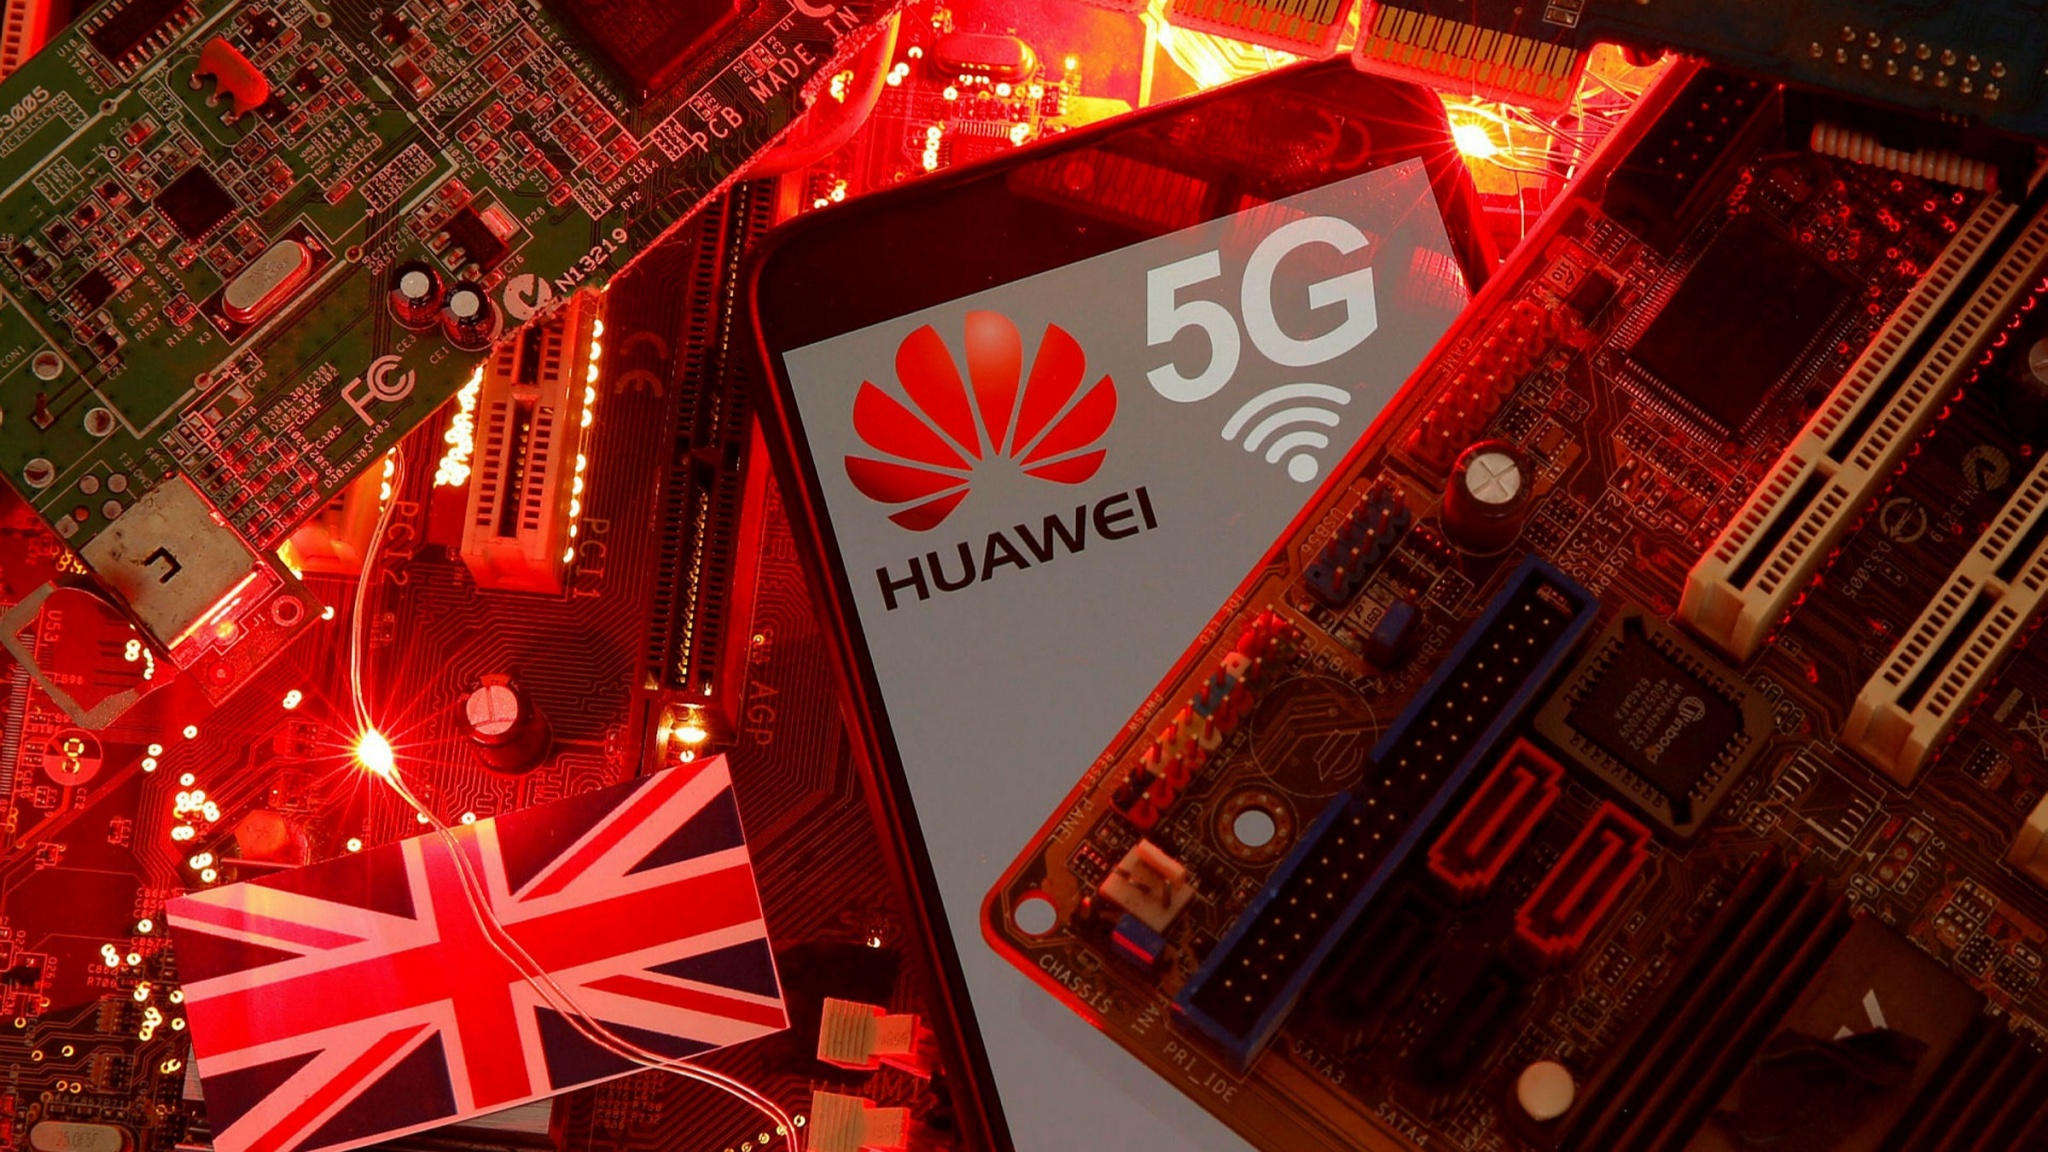 Giới luật pháp Anh quốc: "Chính phủ nên cấm công nghệ 5G của Huawei sớm hơn 2 năm so với kế hoạch"